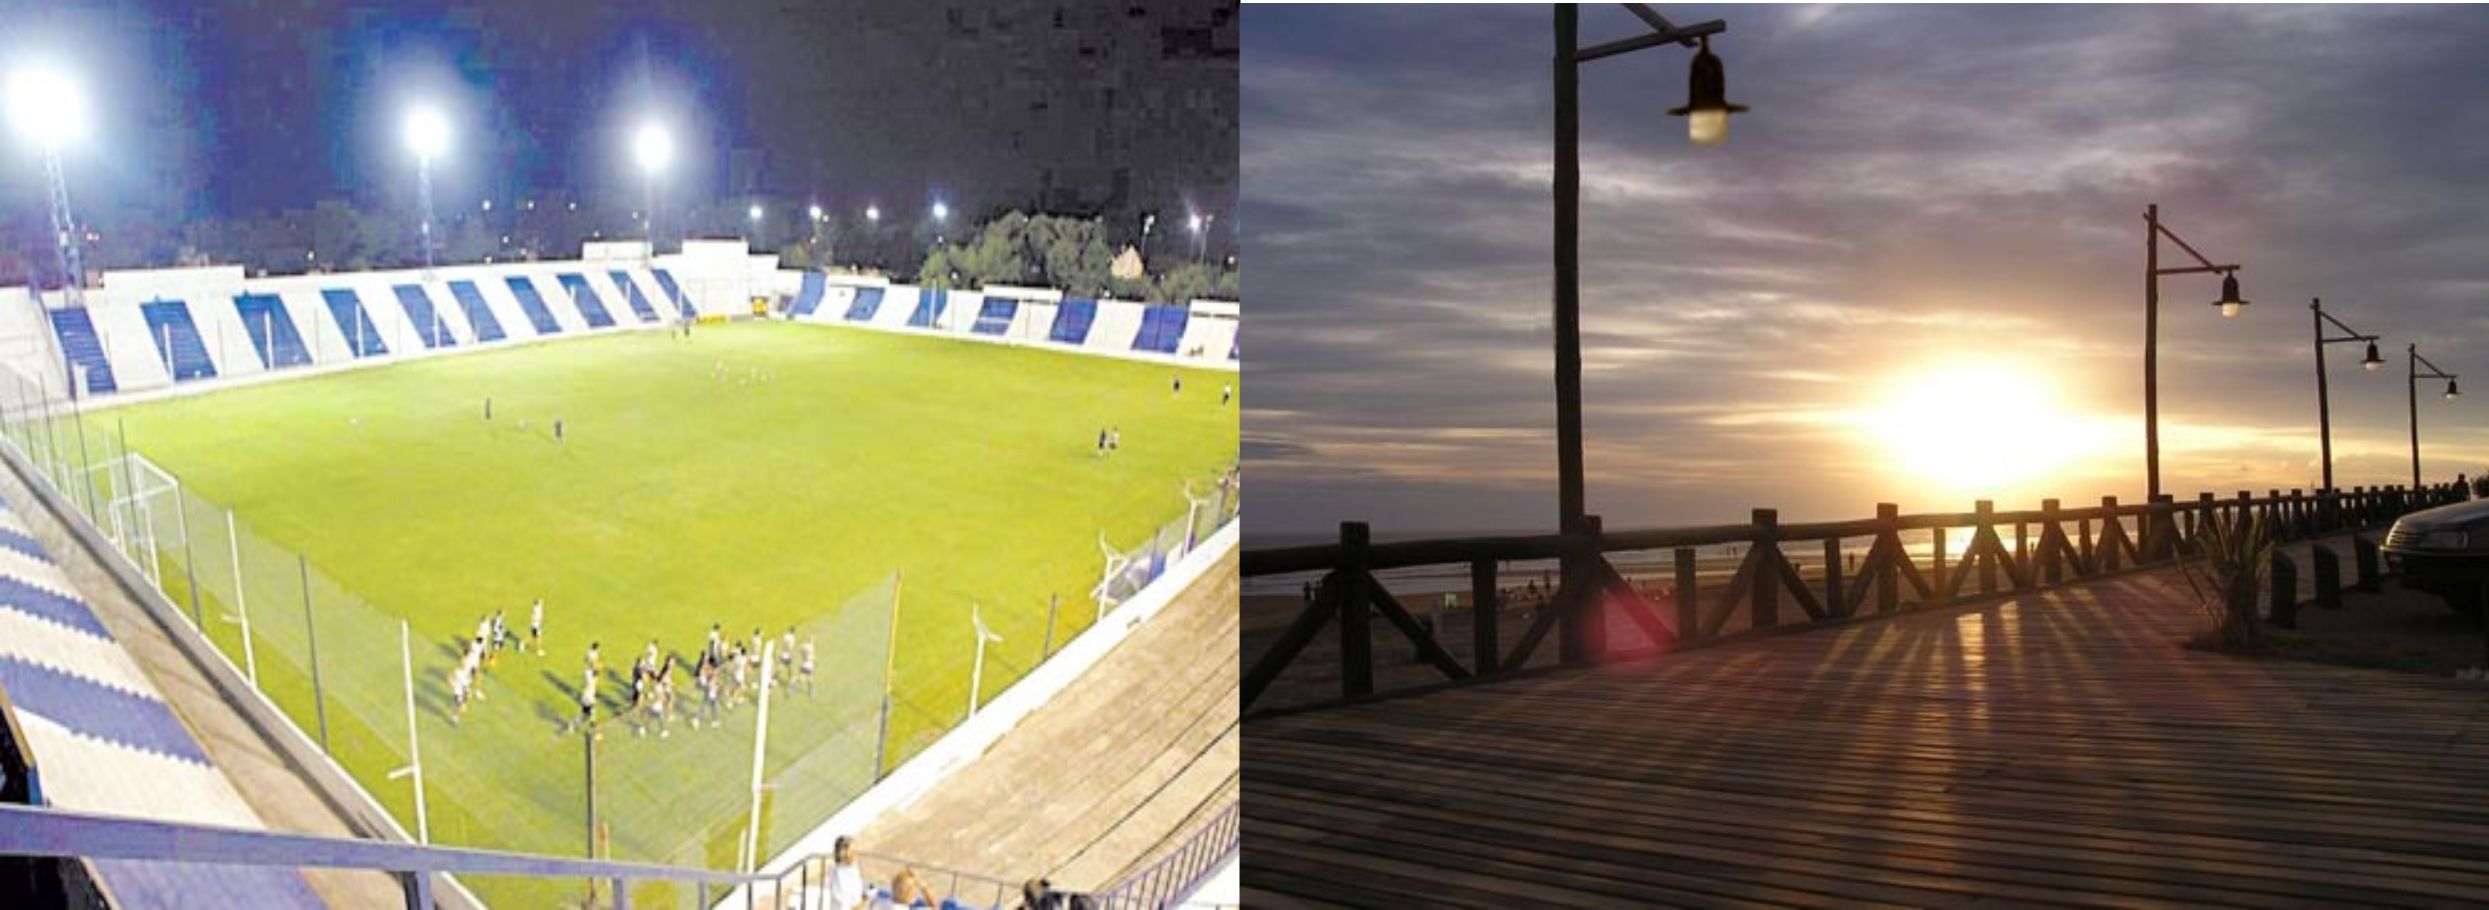 Imagen de aplicación en estadio de fútbol en Córdoba e iluminación en zona costera.